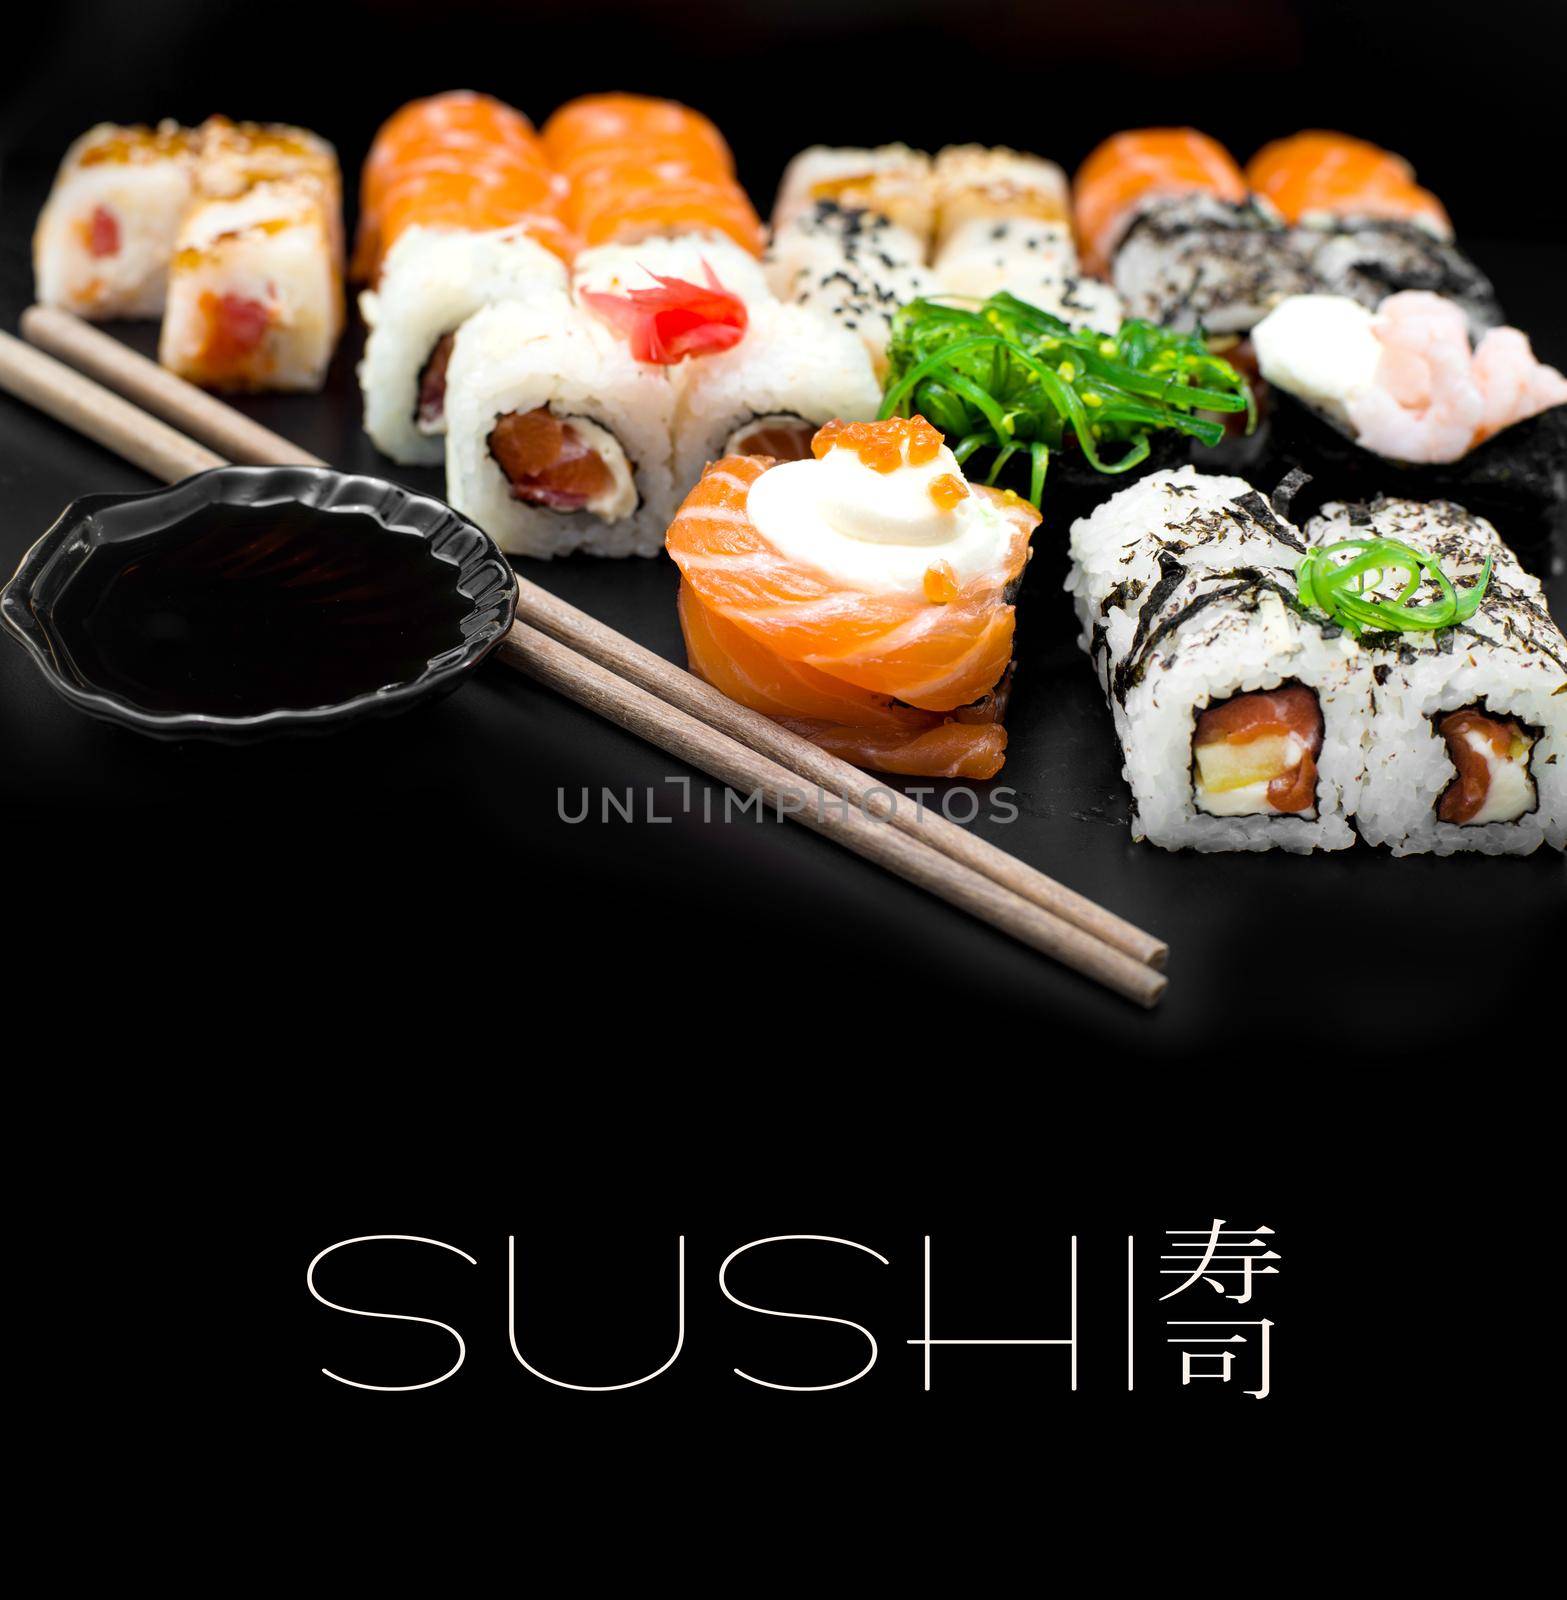 Sushi set isolaterd on black background